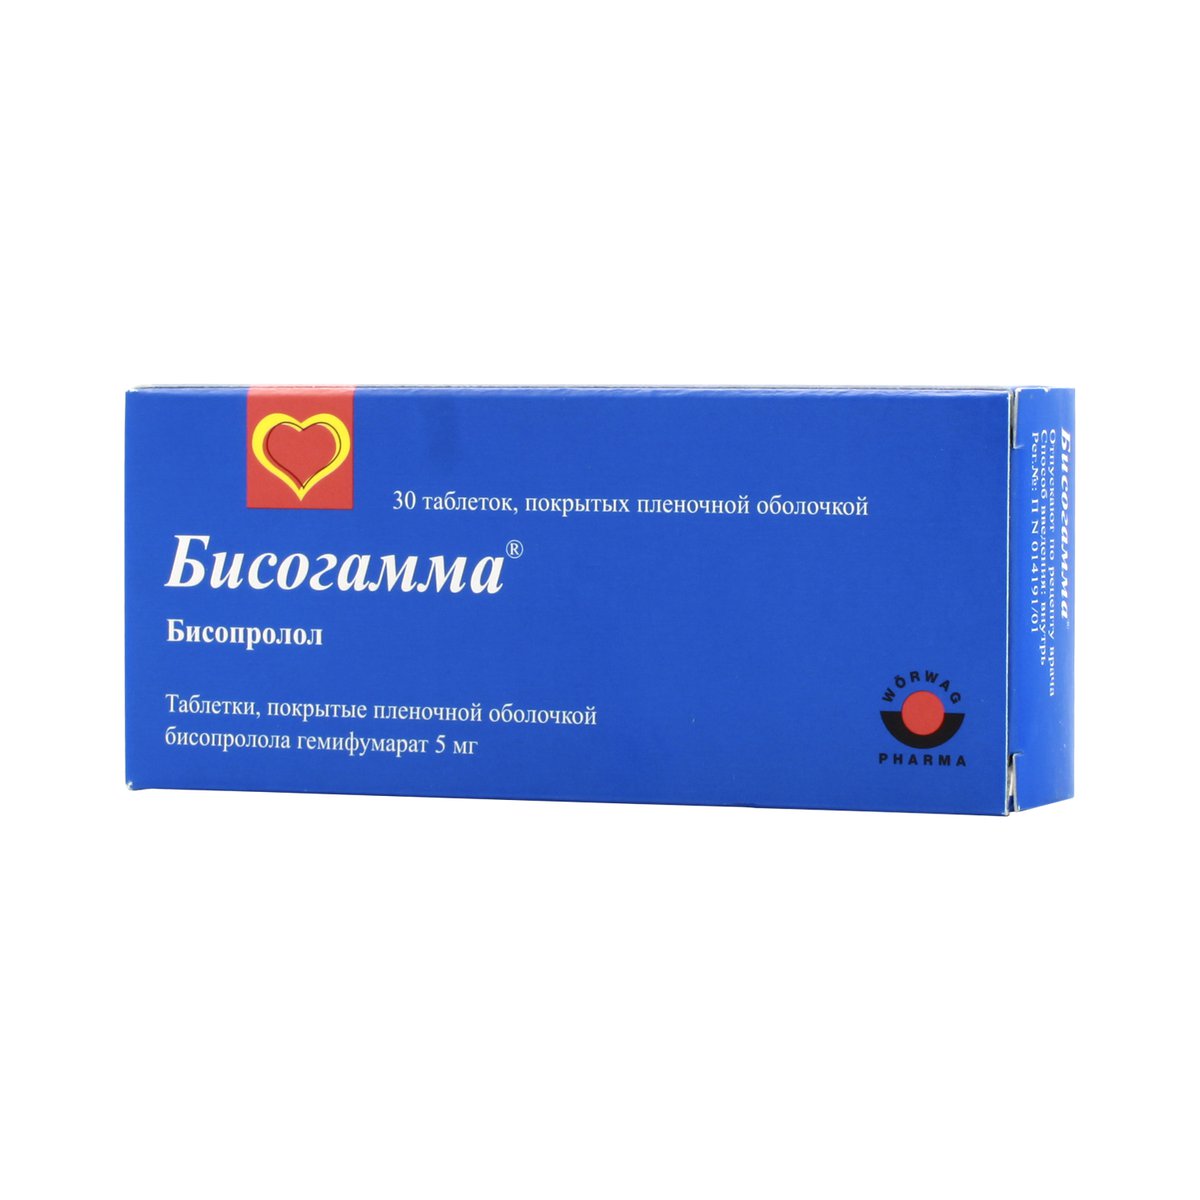 Бисогамма (таблетки, 30 шт, 5 мг, для приема внутрь) - цена,  .